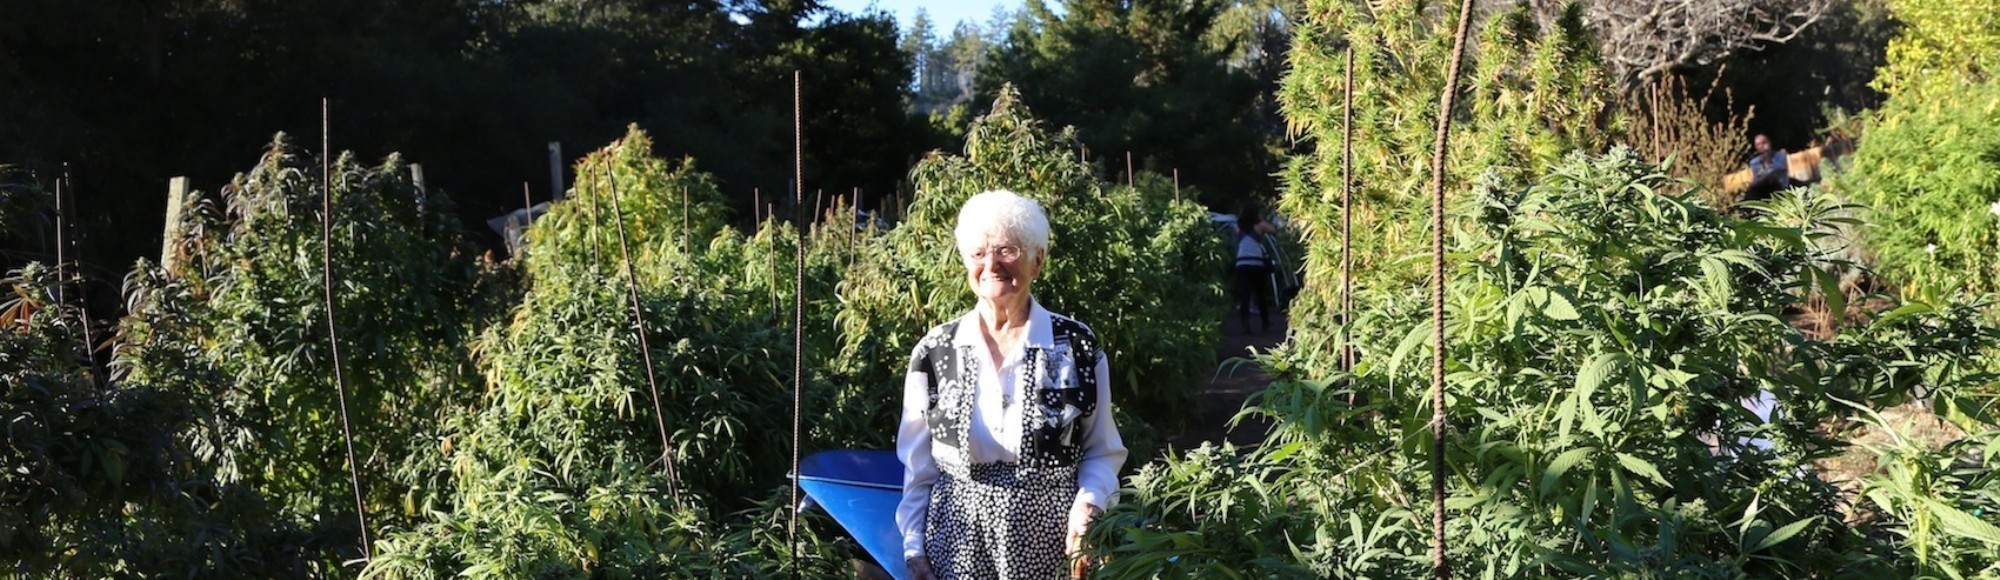 La abuela 'cocinitas' de cannabis